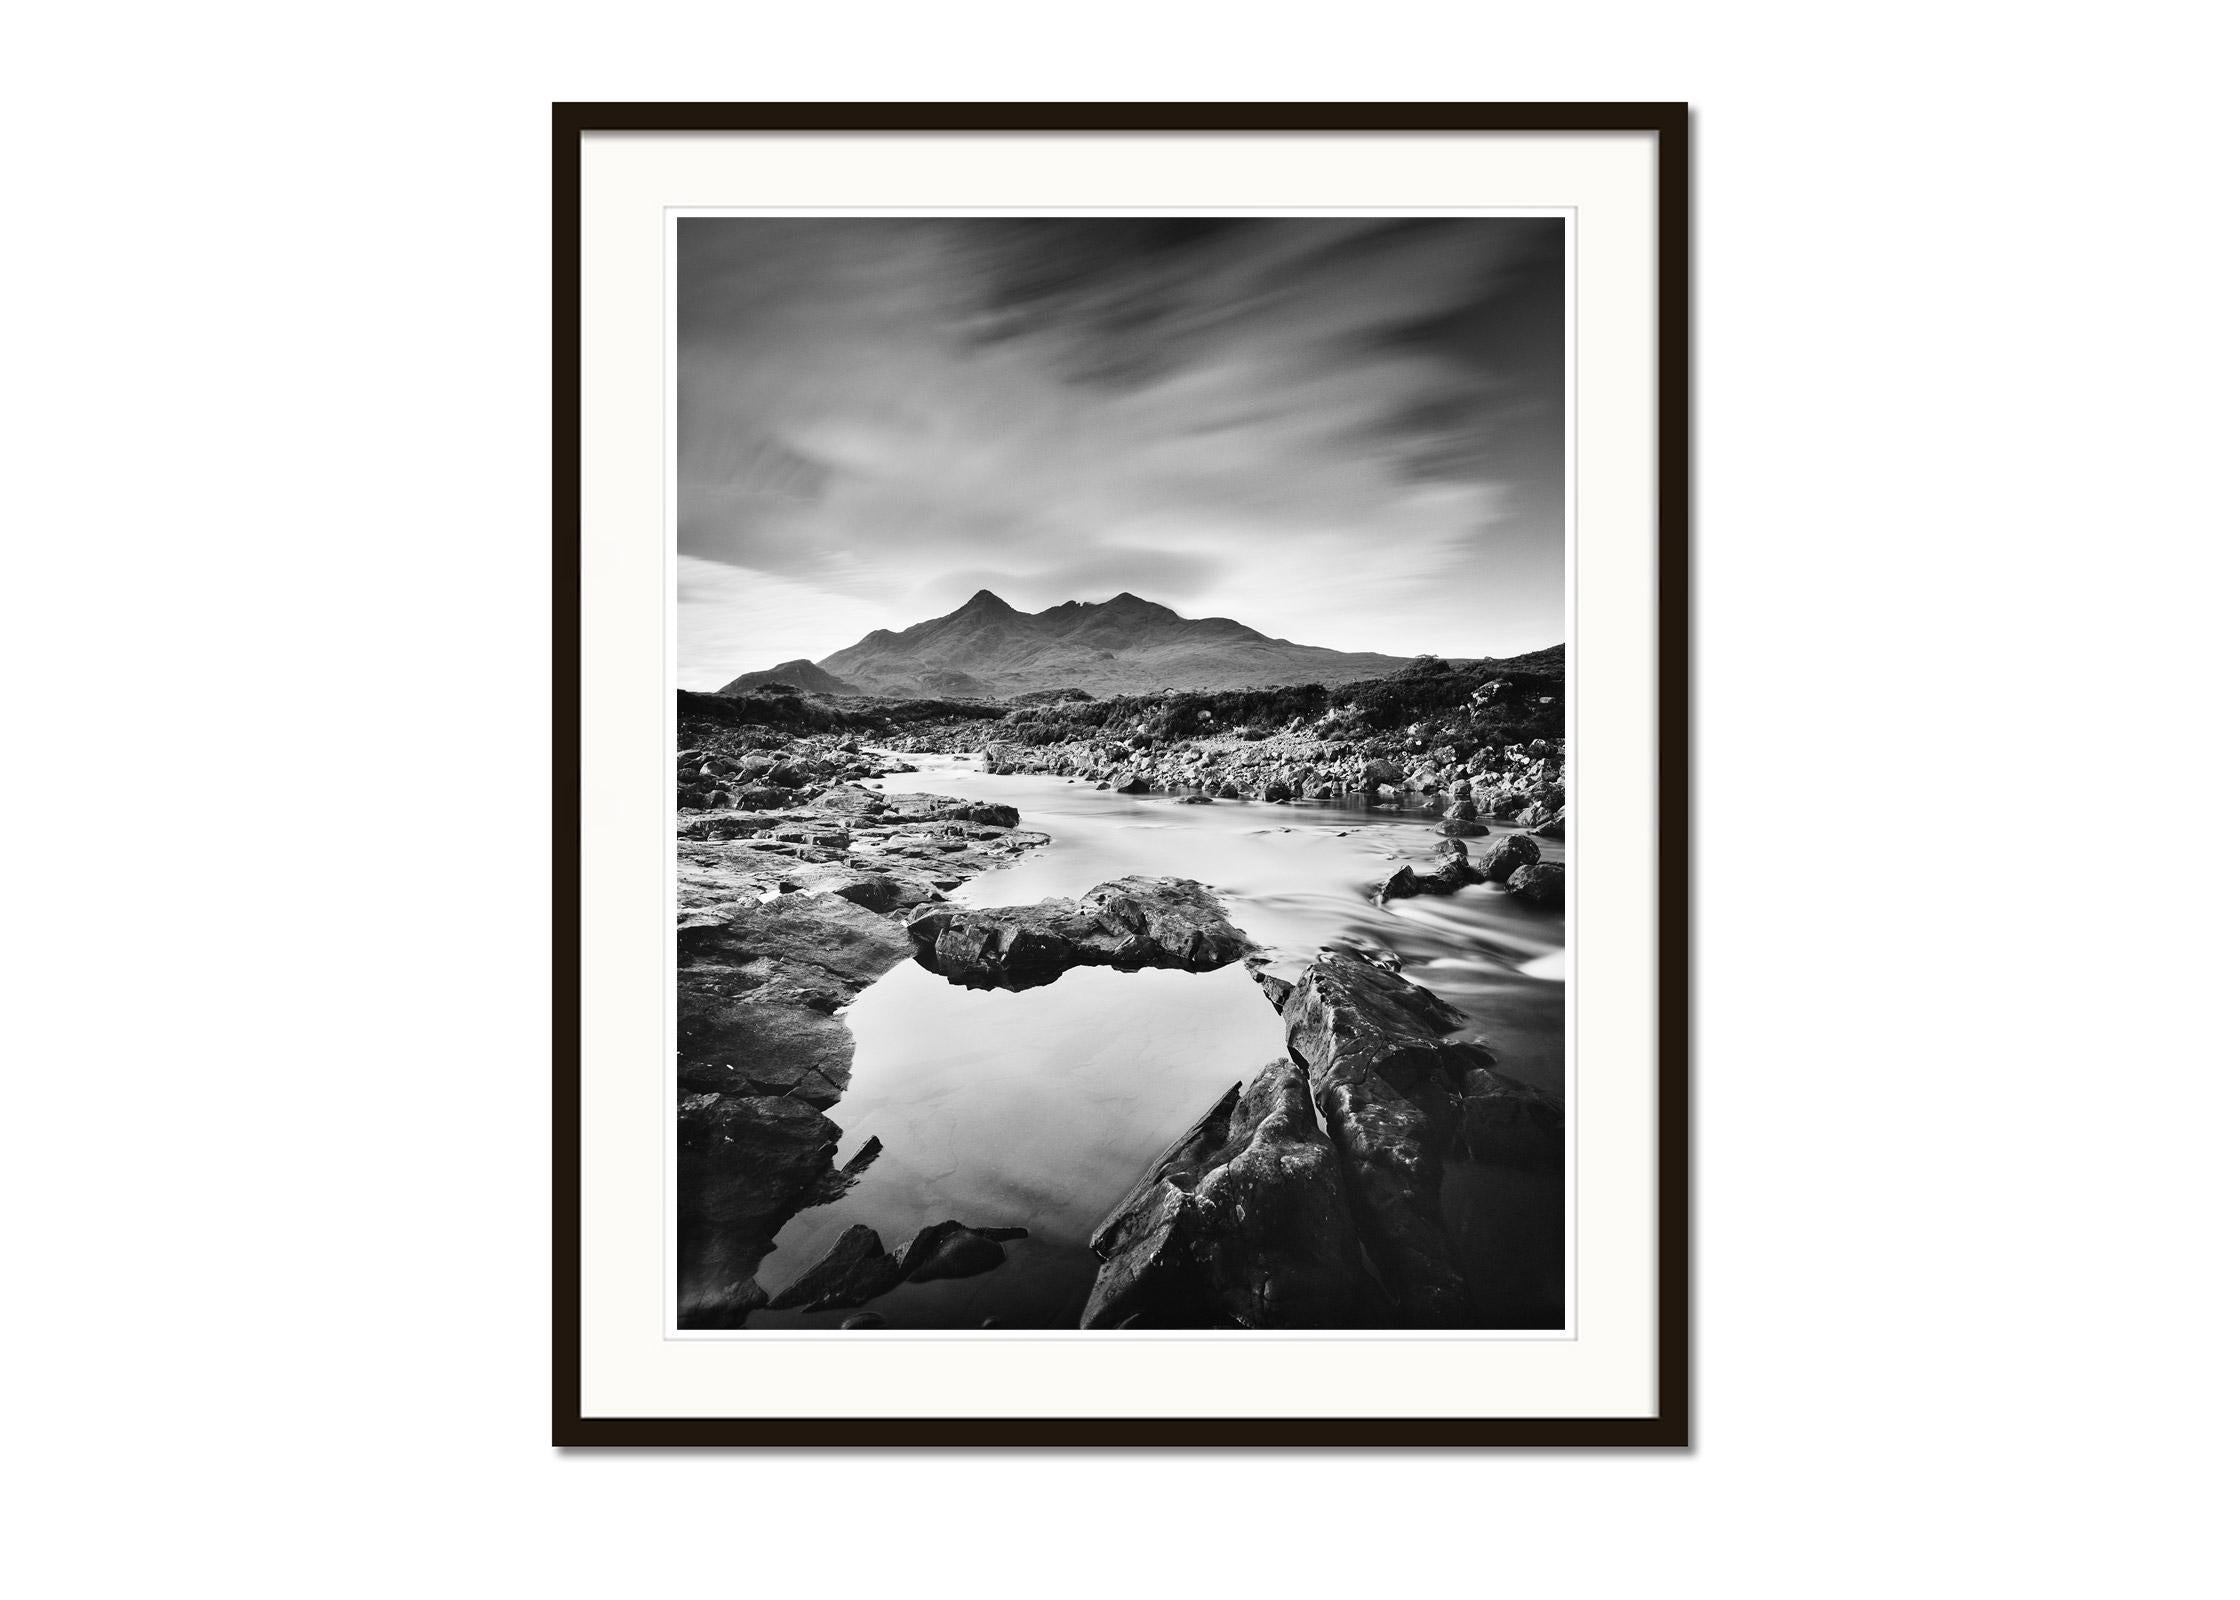 Black Cuillin Hills Mountains Scotland black and white landscape art photography - Noir Landscape Photograph par Gerald Berghammer